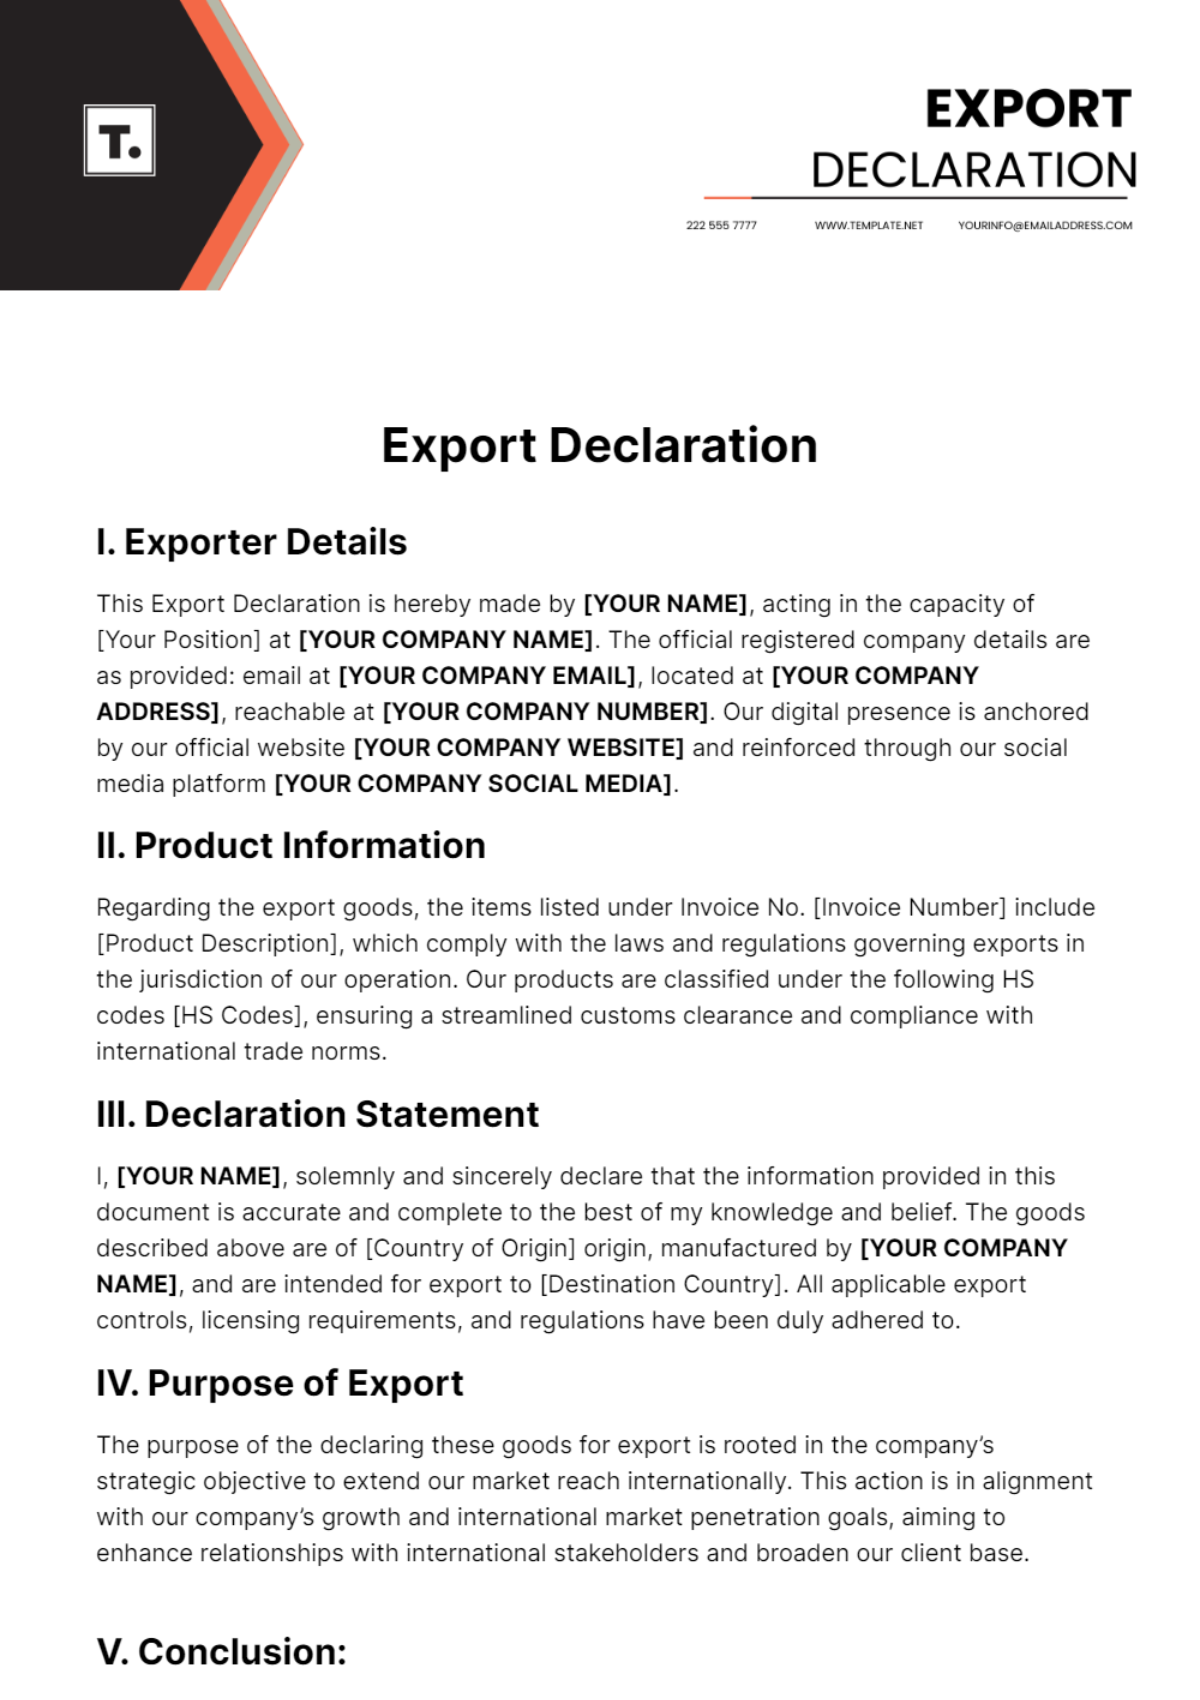 Export Declaration Template